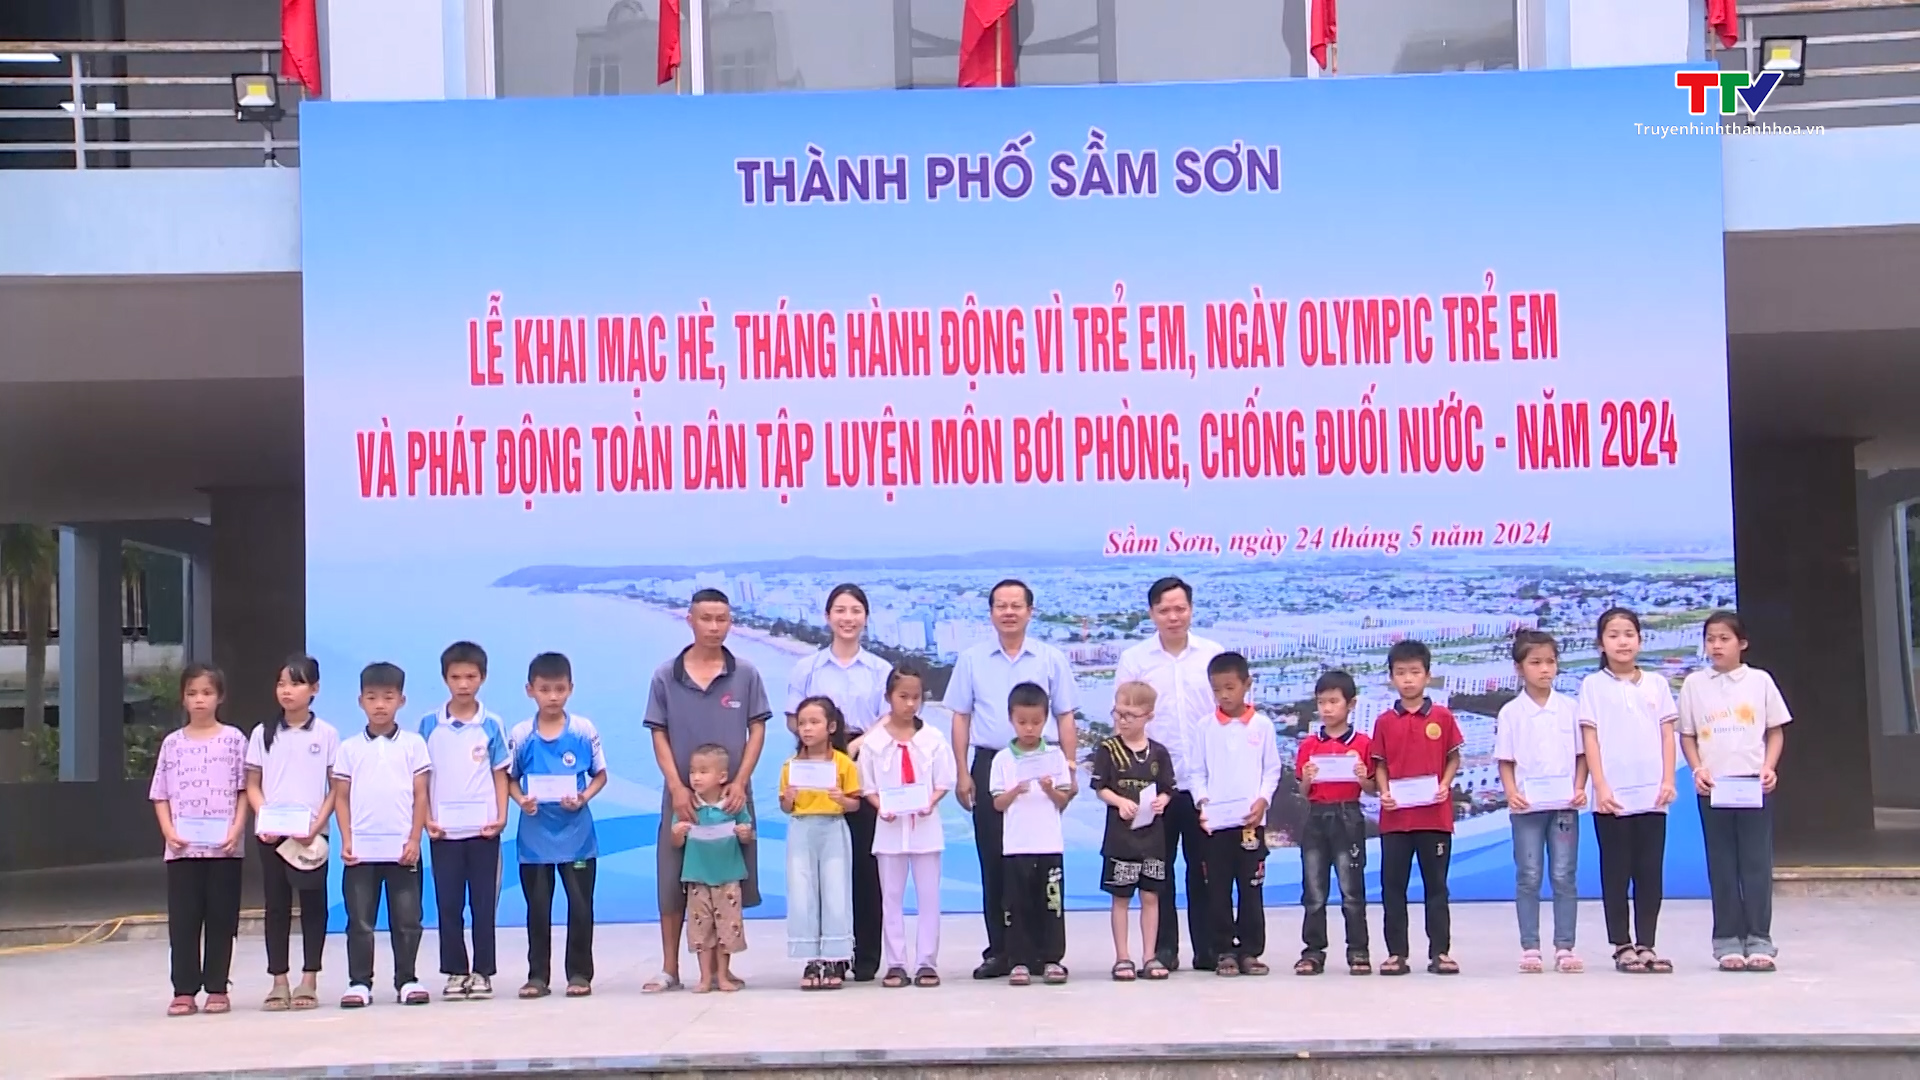 Thành phố Sầm Sơn tổ chức lễ khai mạc hè, Ngày Olympic trẻ em năm 2024- Ảnh 2.